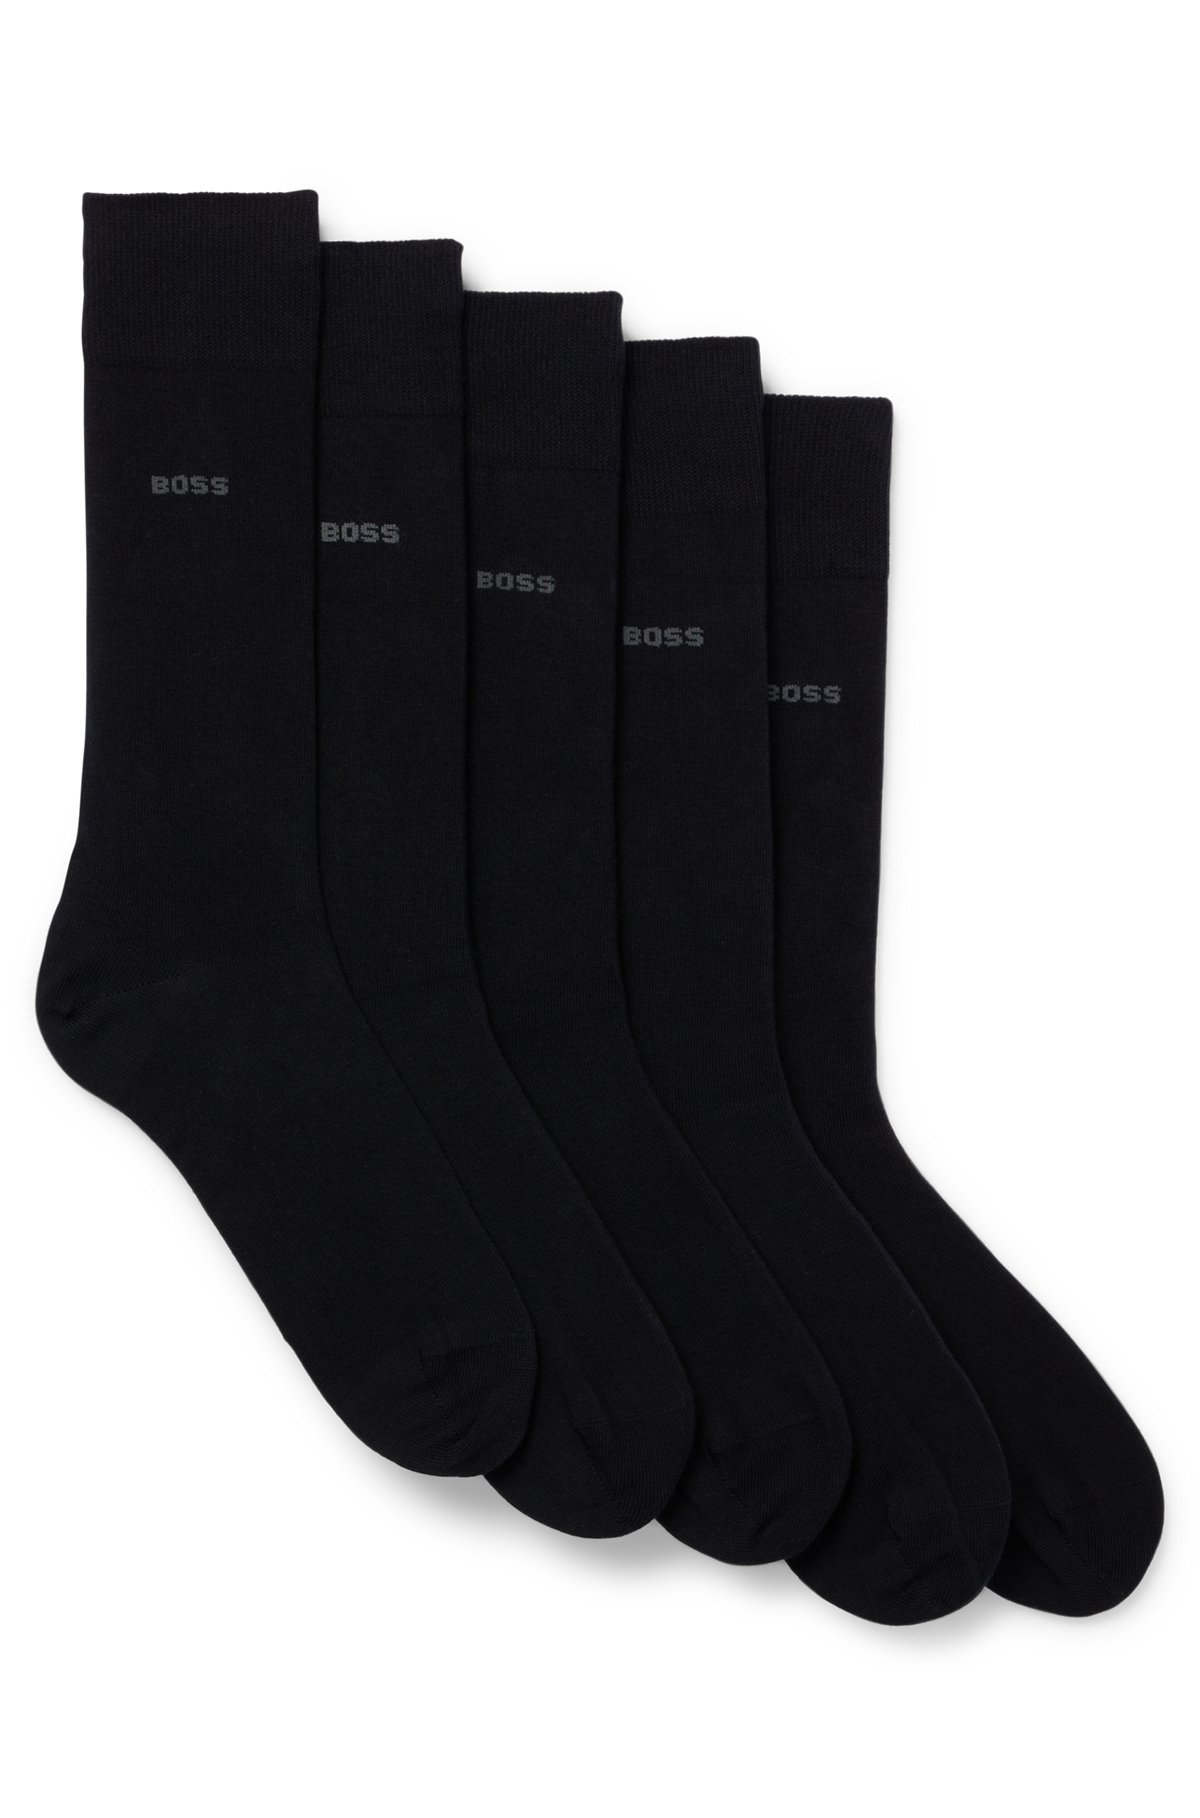 Five-pack of regular-length socks in a cotton blend, Black